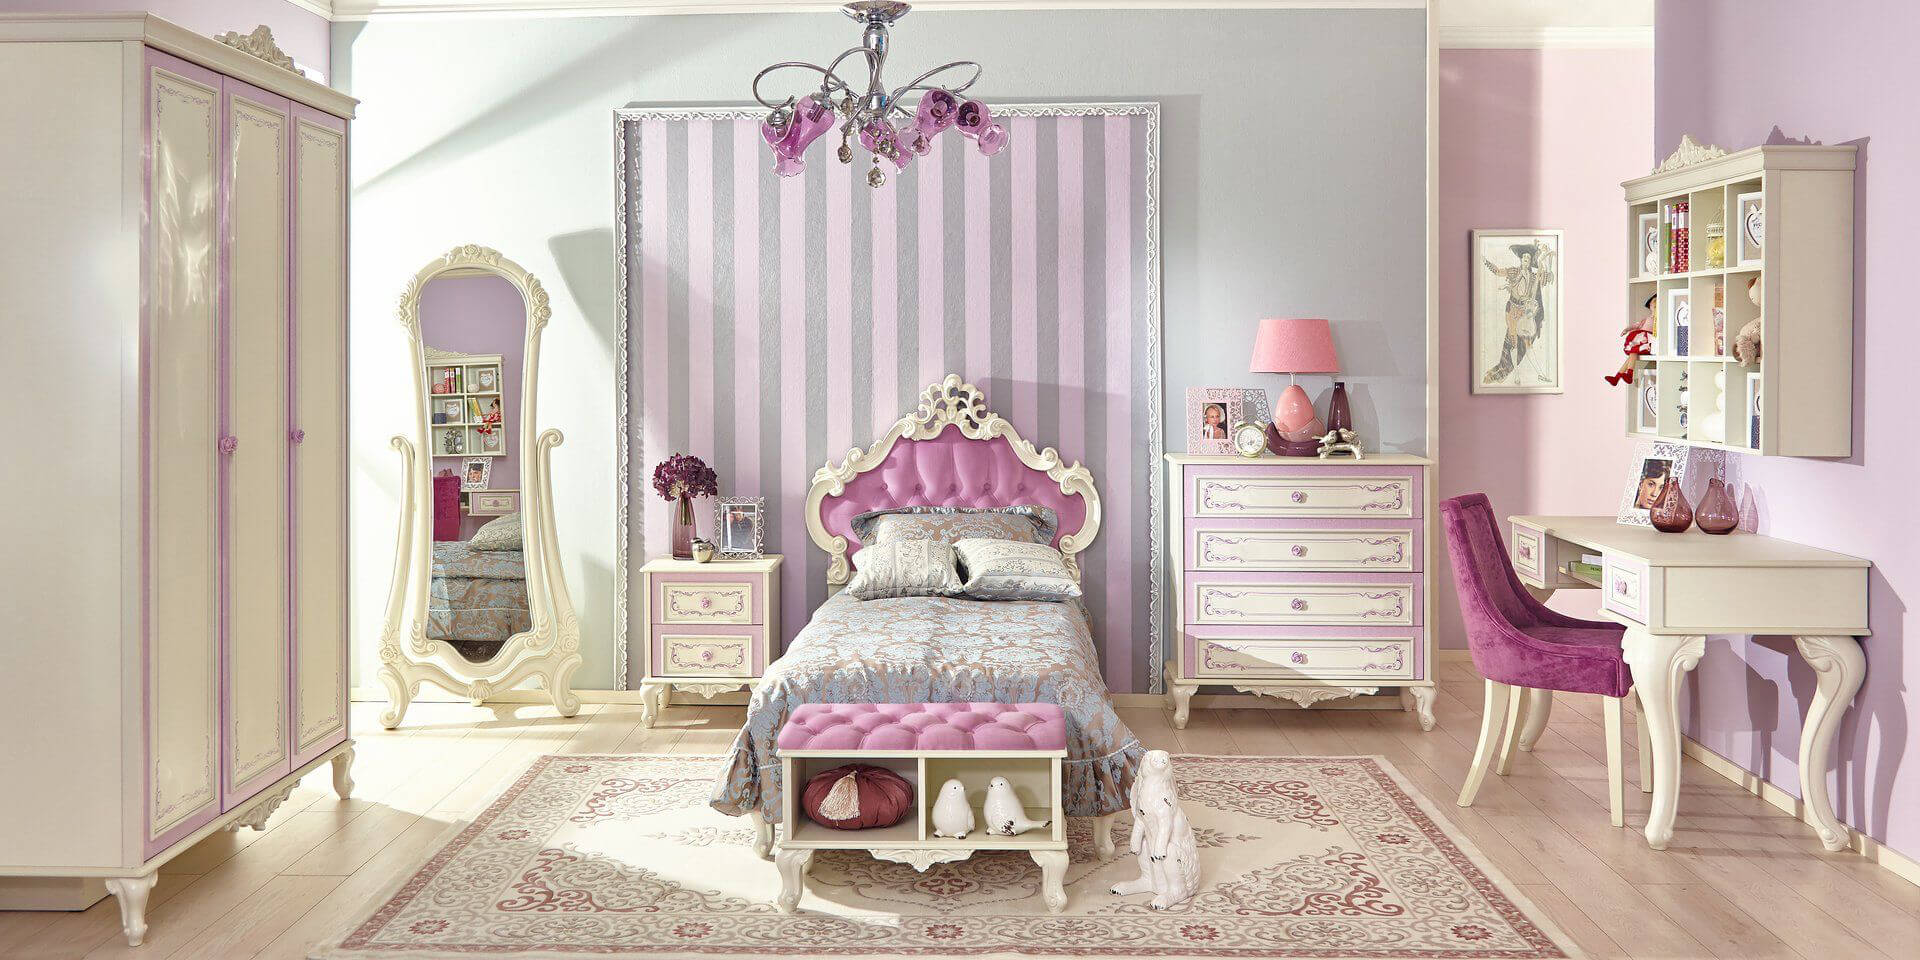 Дизайн спальня для девочки - уникальные советы, рекомендации и фото идеи